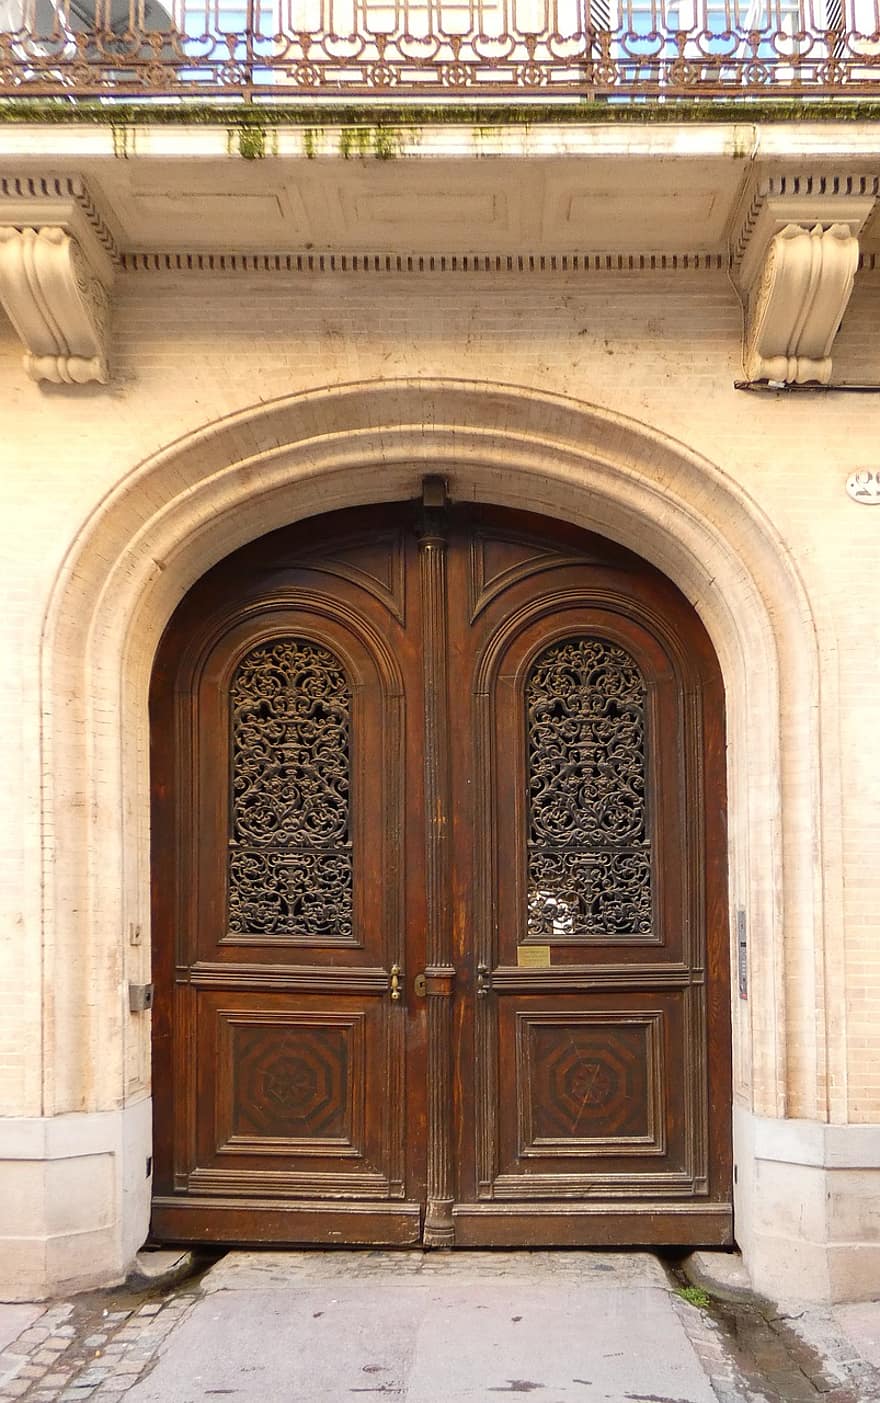 ประตู, เนื้อไม้, ทางเข้า, เก่า, ประวัติศาสตร์, สถาปัตยกรรม, Occitania, ปิด, ศาสนาคริสต์, ภายนอกอาคาร, โค้ง